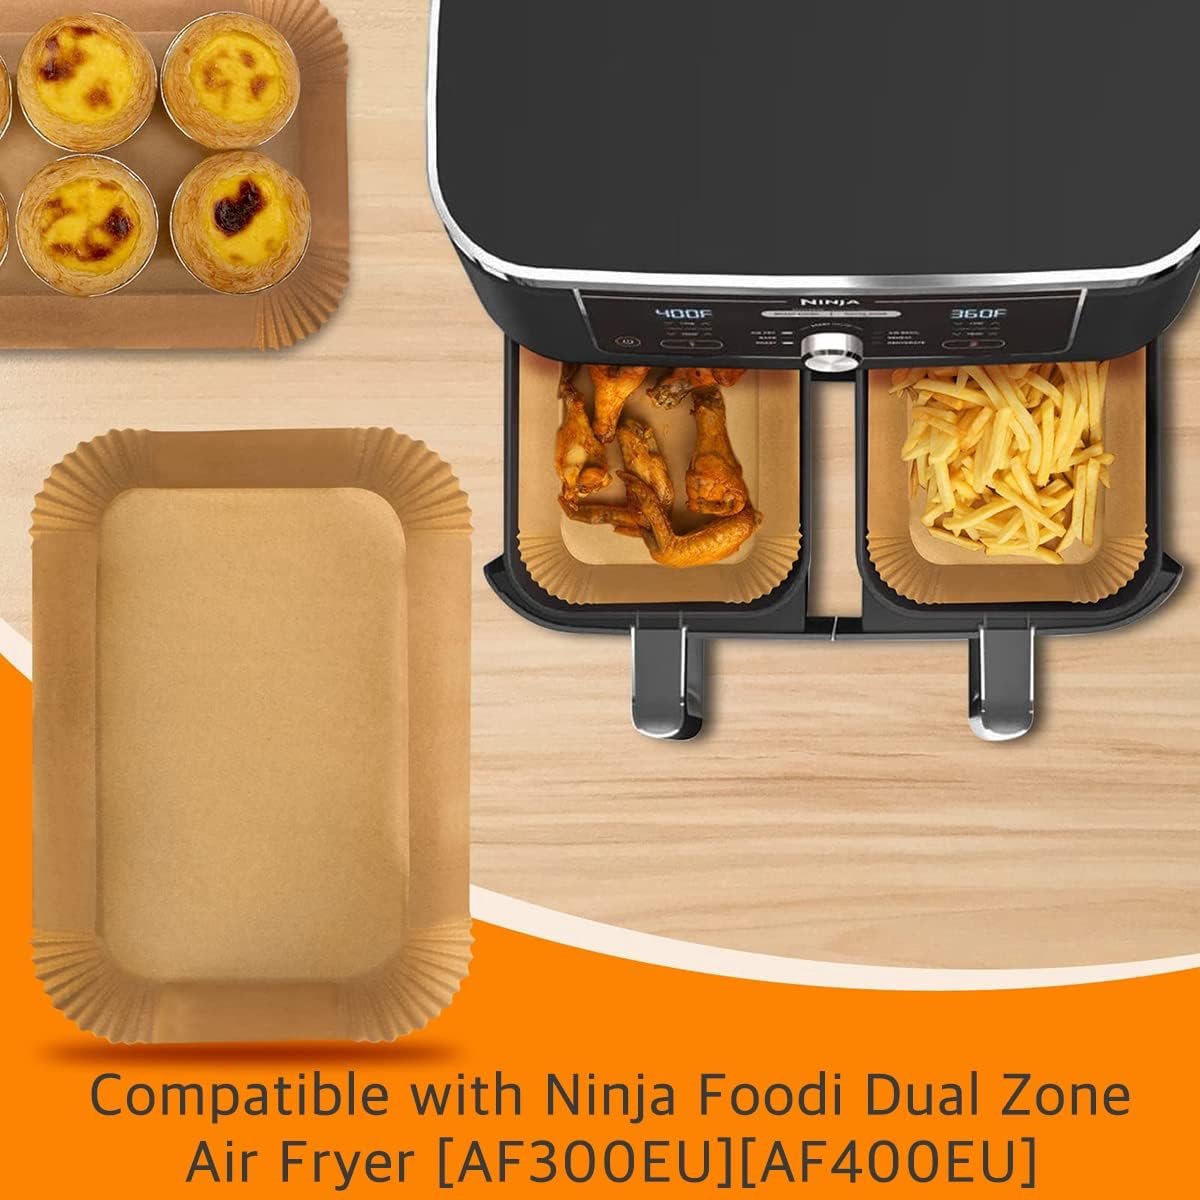 Accessoire Air Fryer,Paquet De 2 Moule Air Fryer Pour Ninja Foodi